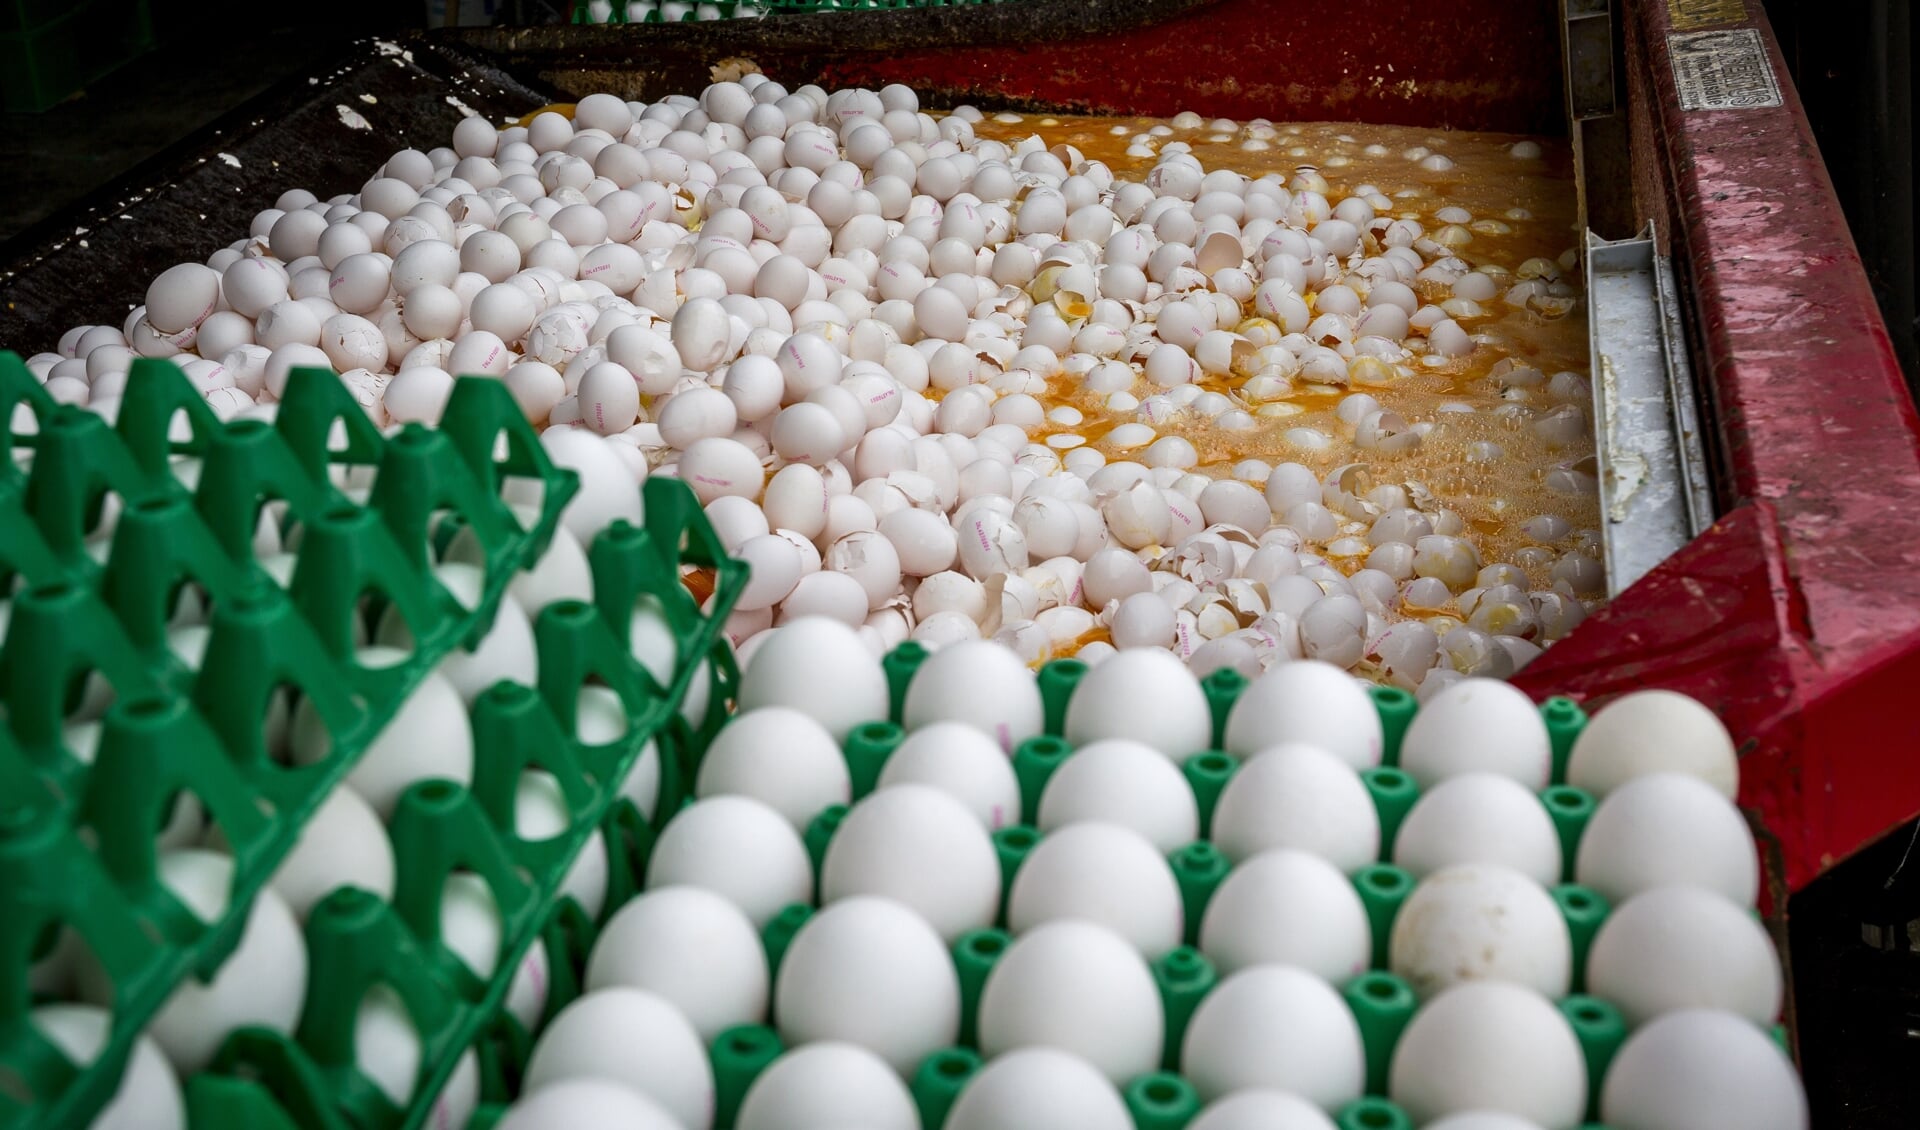 Eieren waarin fipronil is aangetroffen worden vernietigd in augustus 2017.